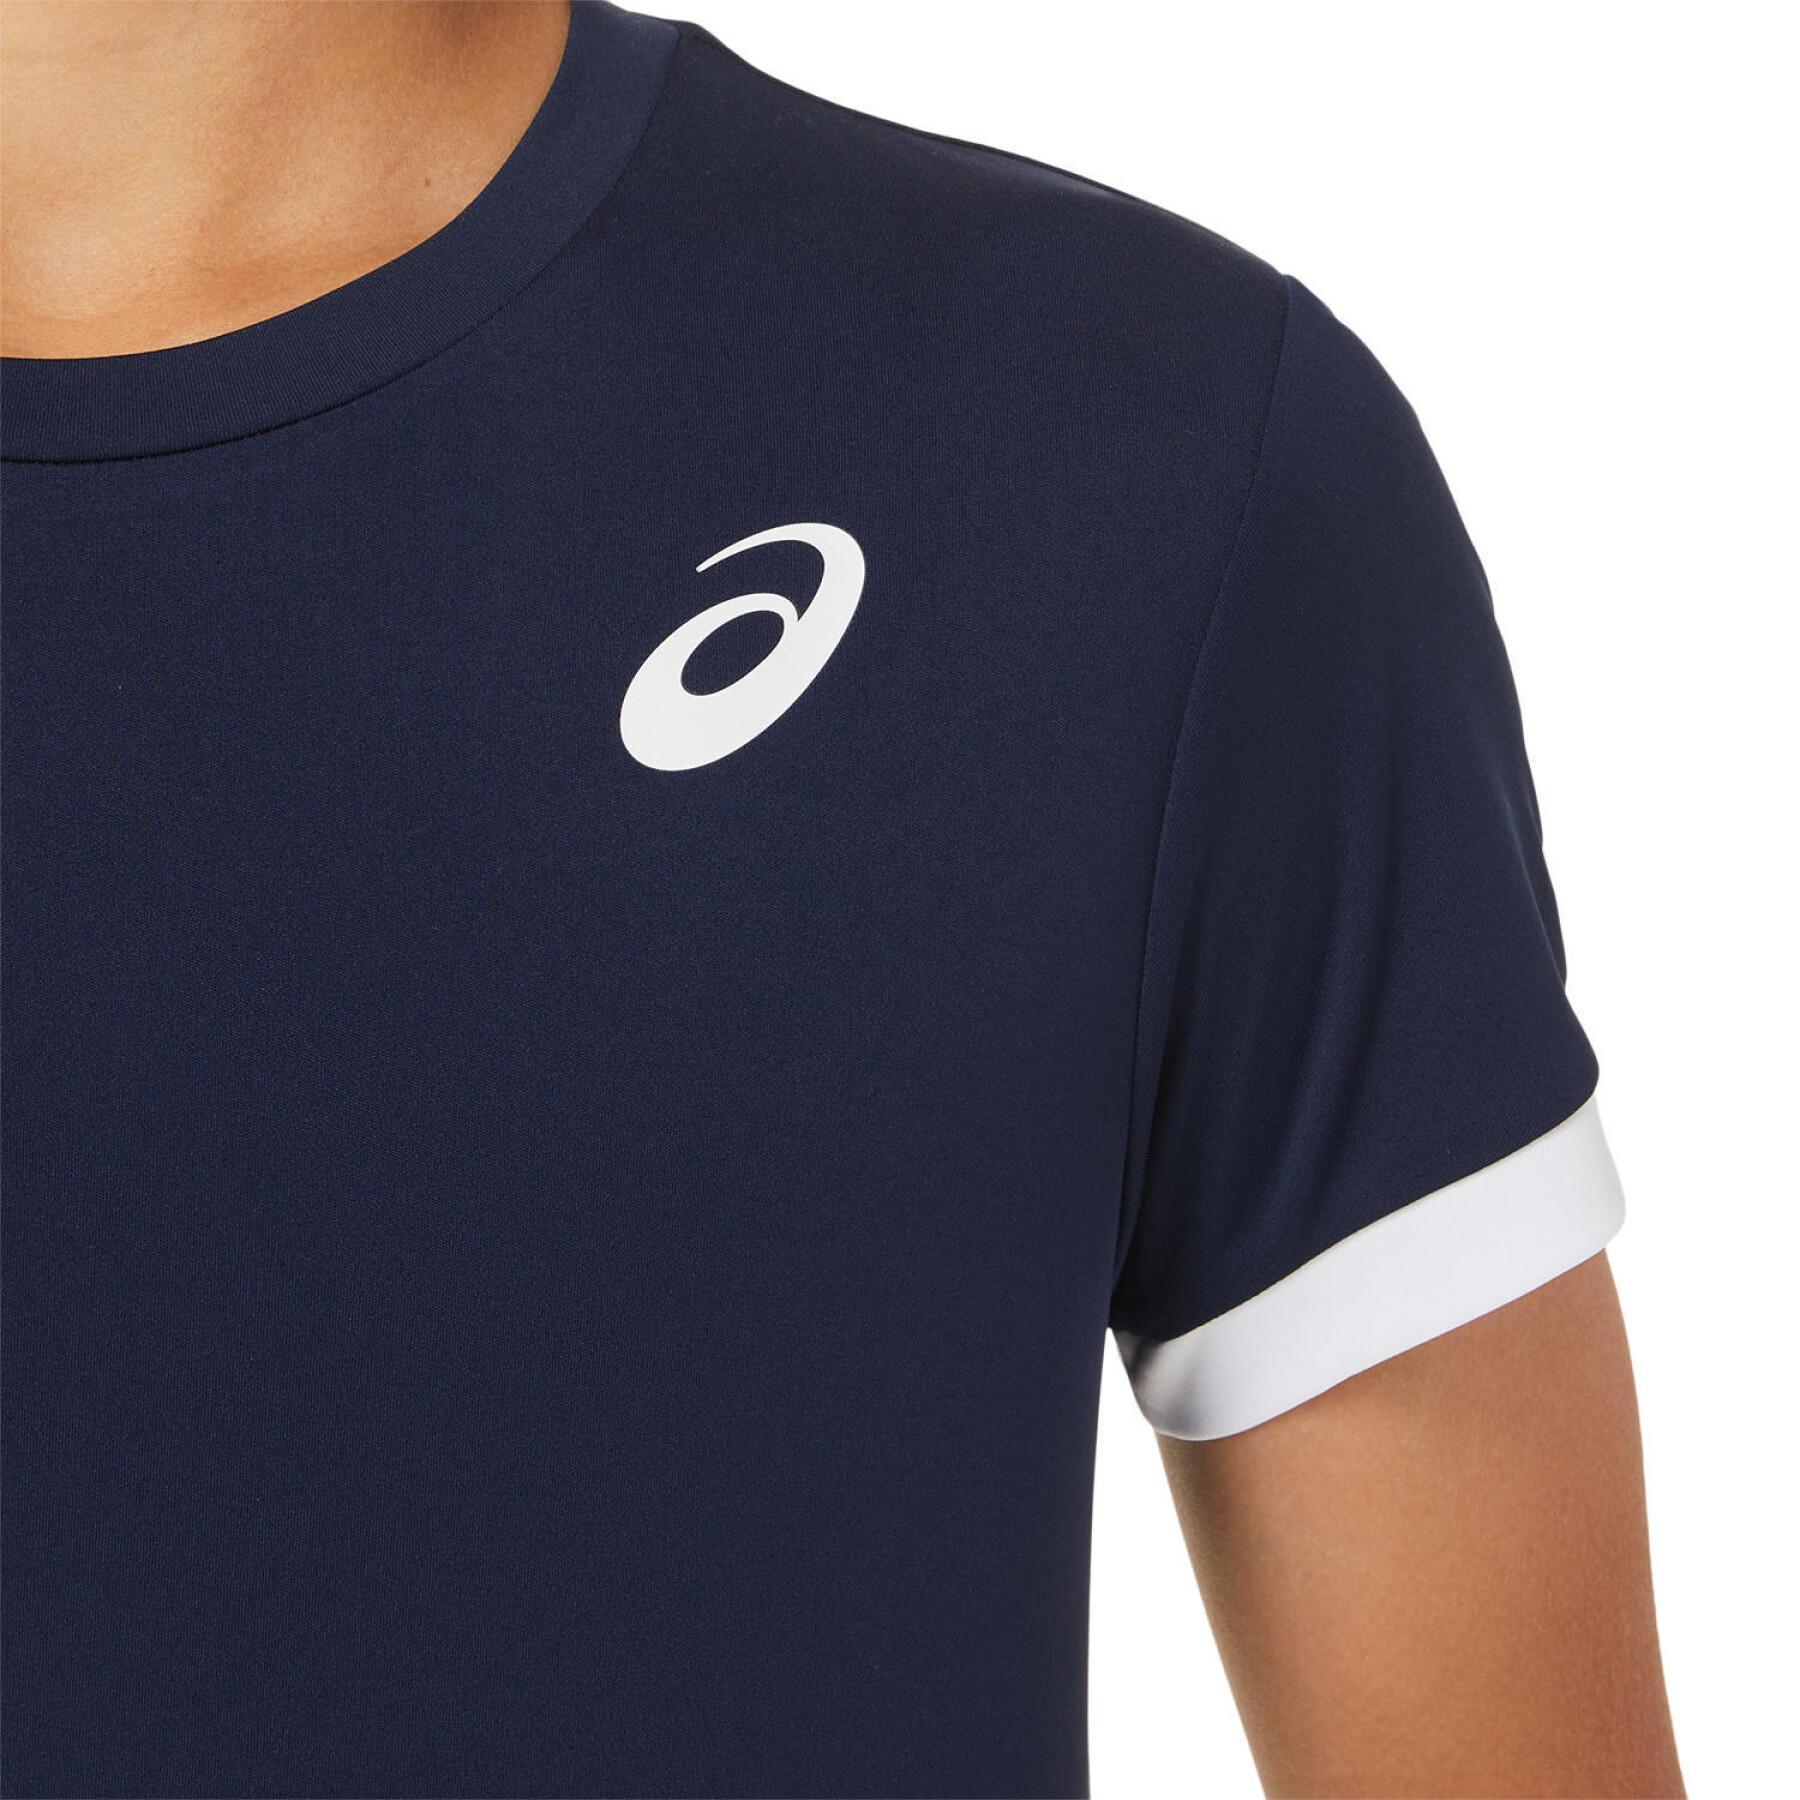 Camiseta de tenis para niños Asics